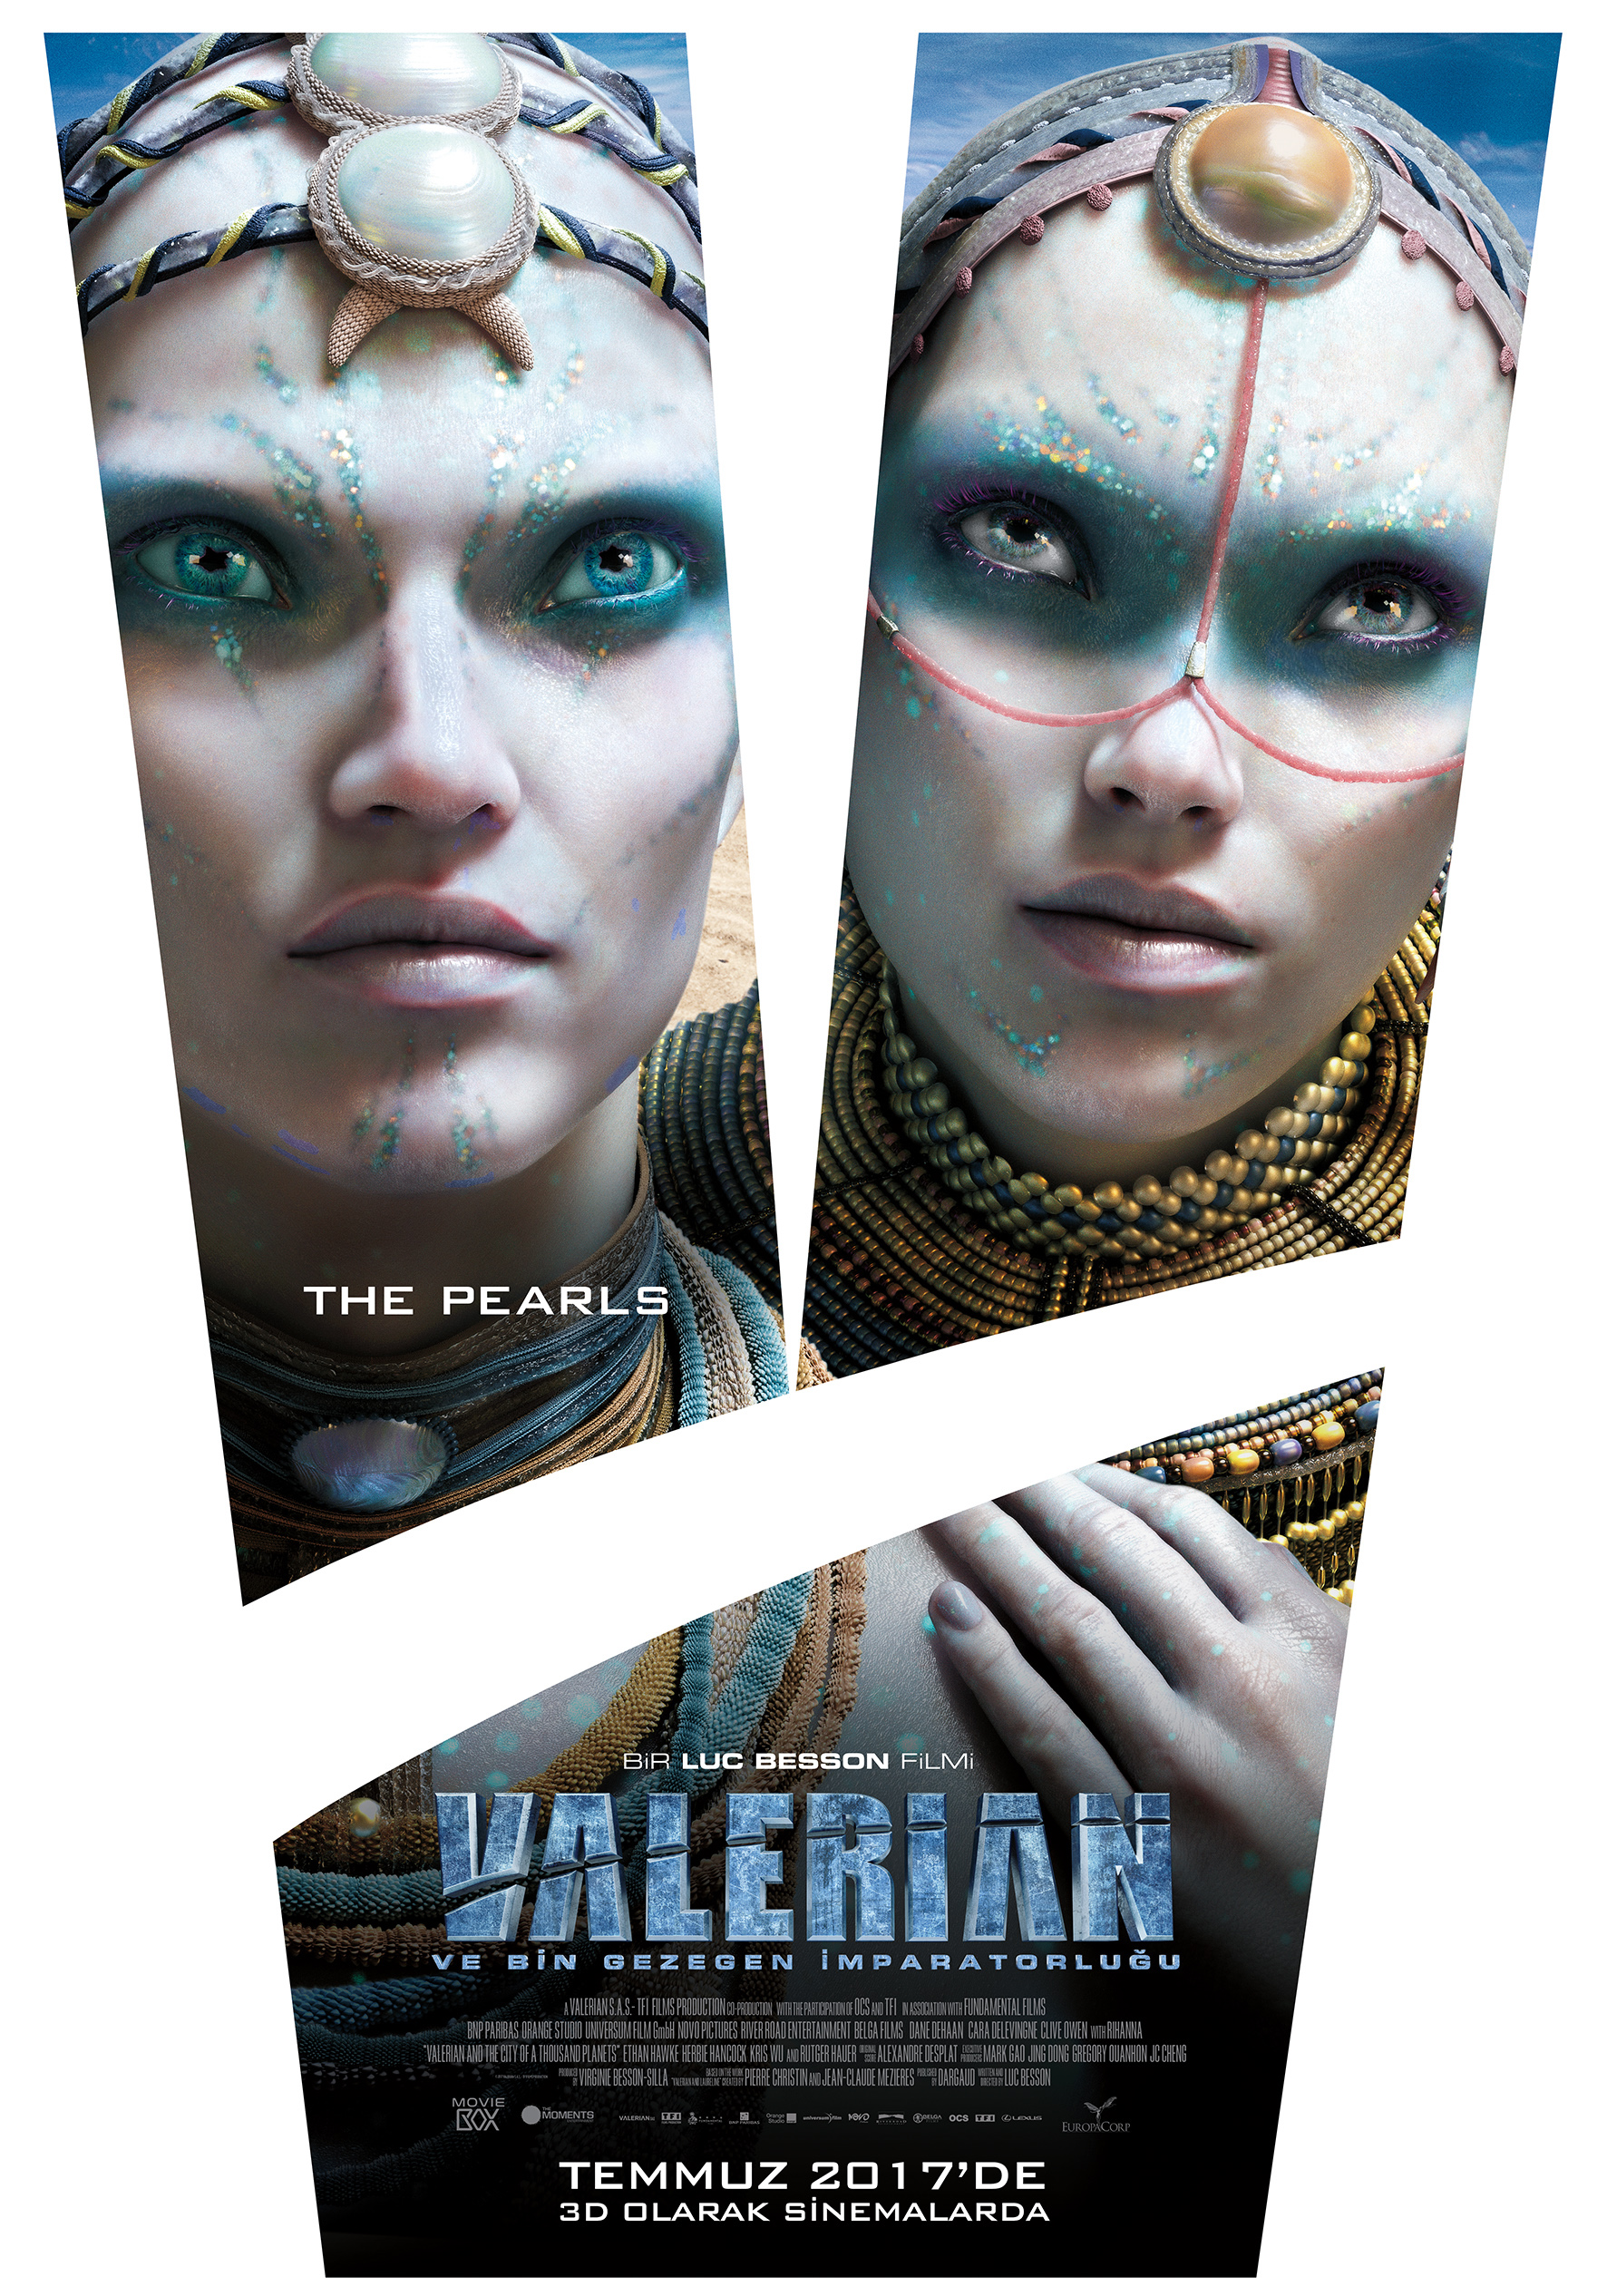 Valerian ve Bin Gezegen İmparatorluğu 5 – Valerian Karakter Afisleri the Pearls